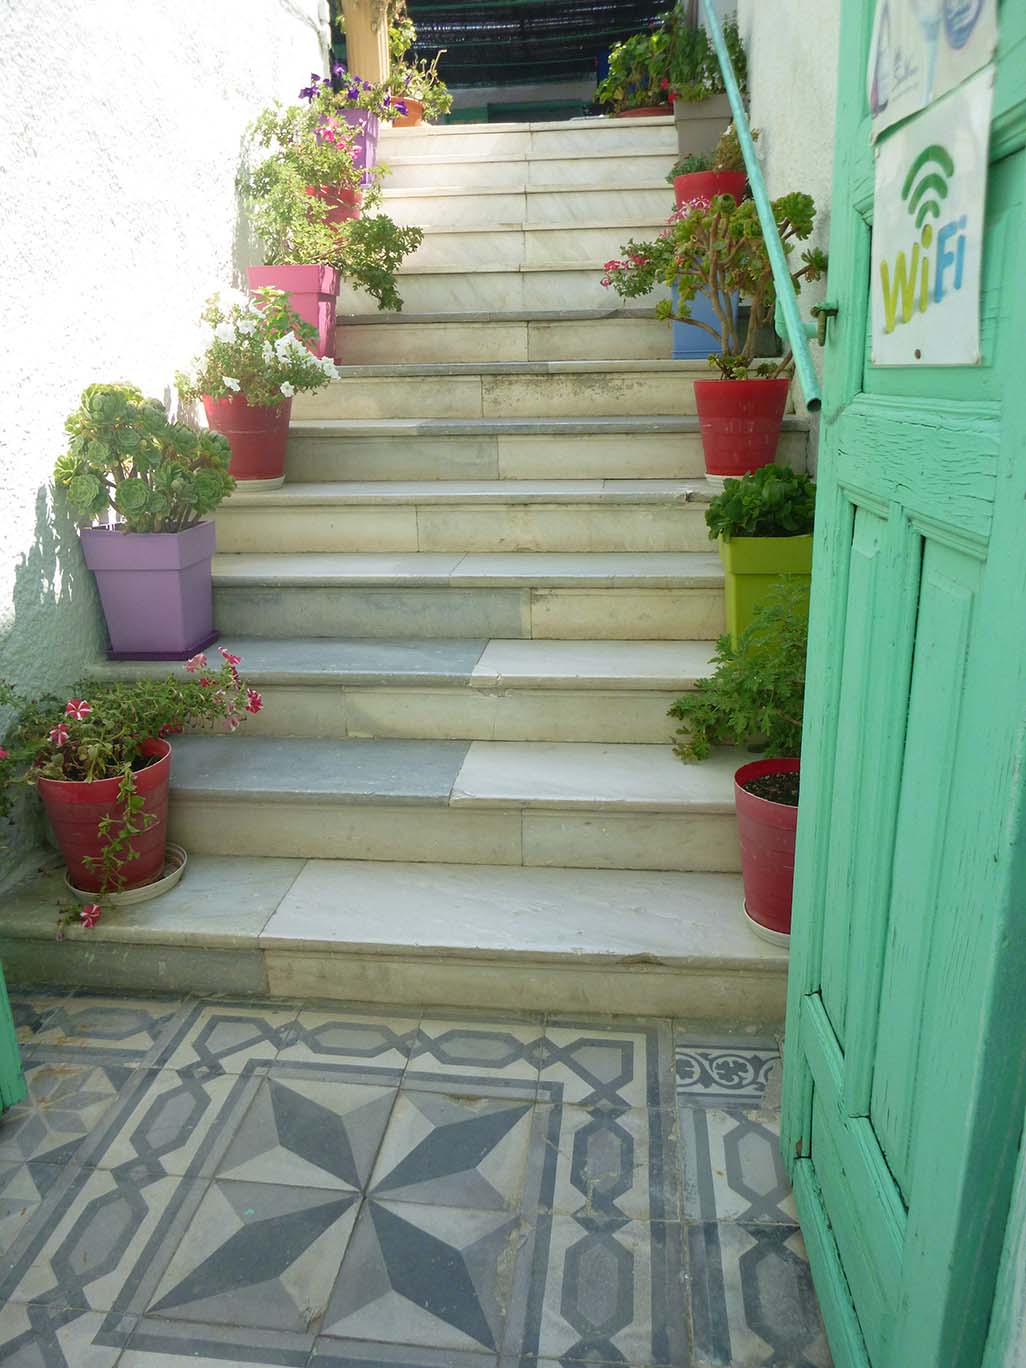 Entrance to wifi restaurant in Santorini